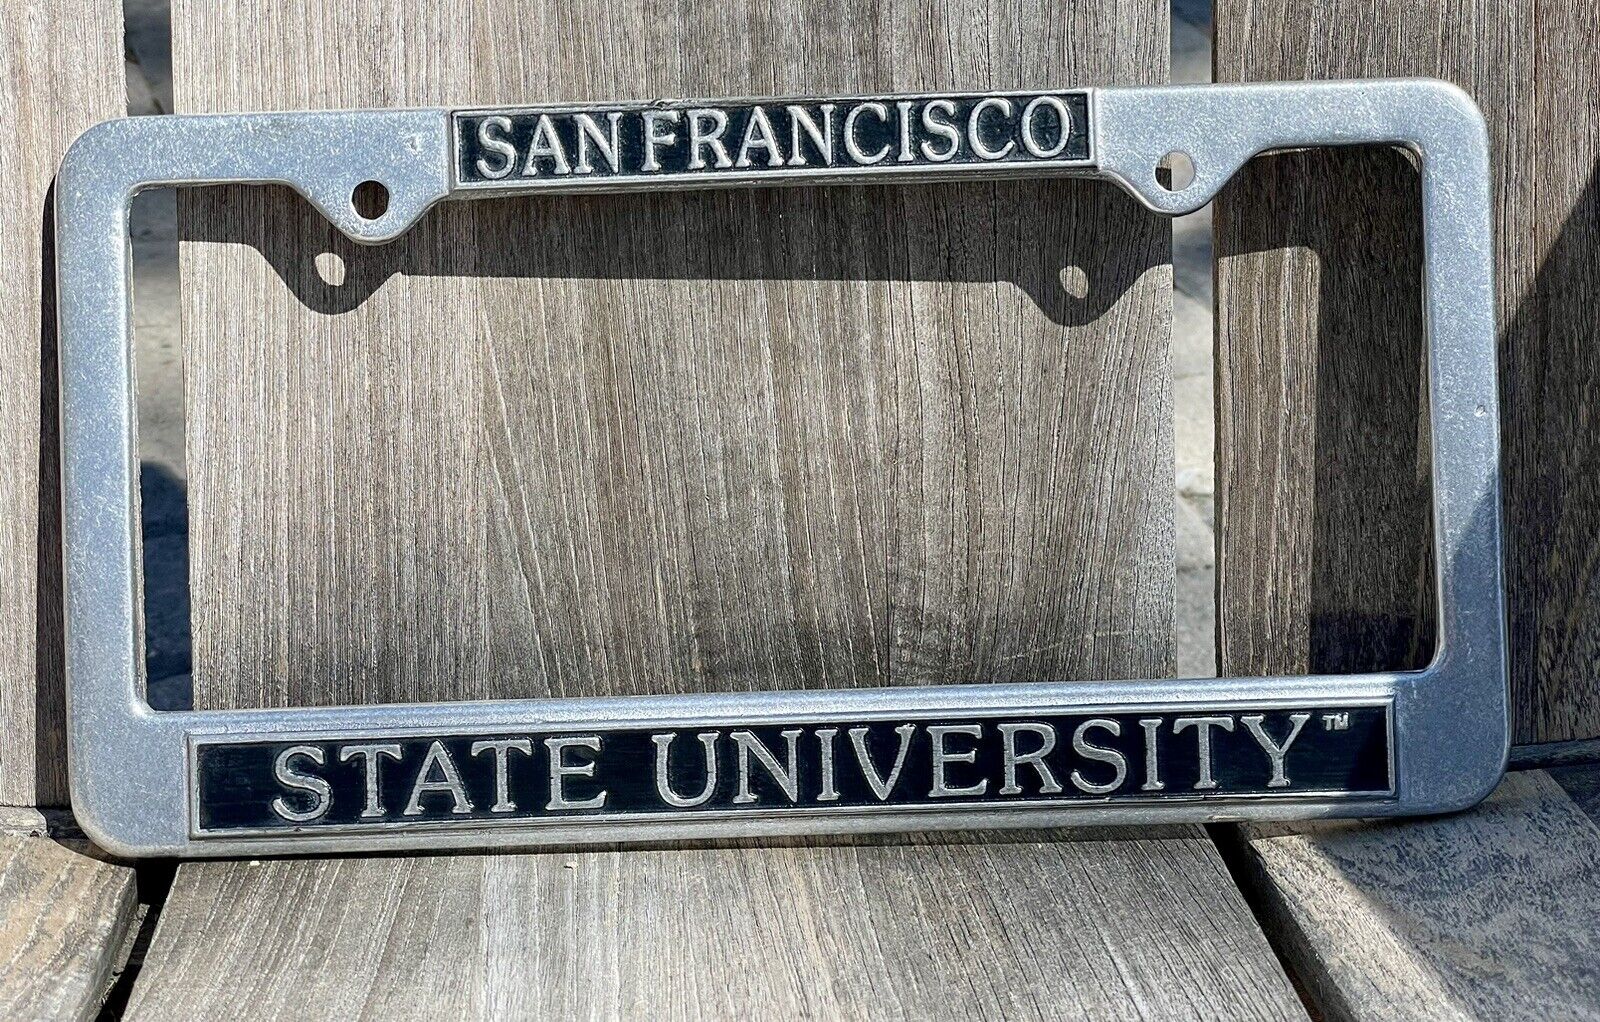 Vintage SAN FRANCISCO STATE License Plate Holder  Zinc Alloy Plate Frame